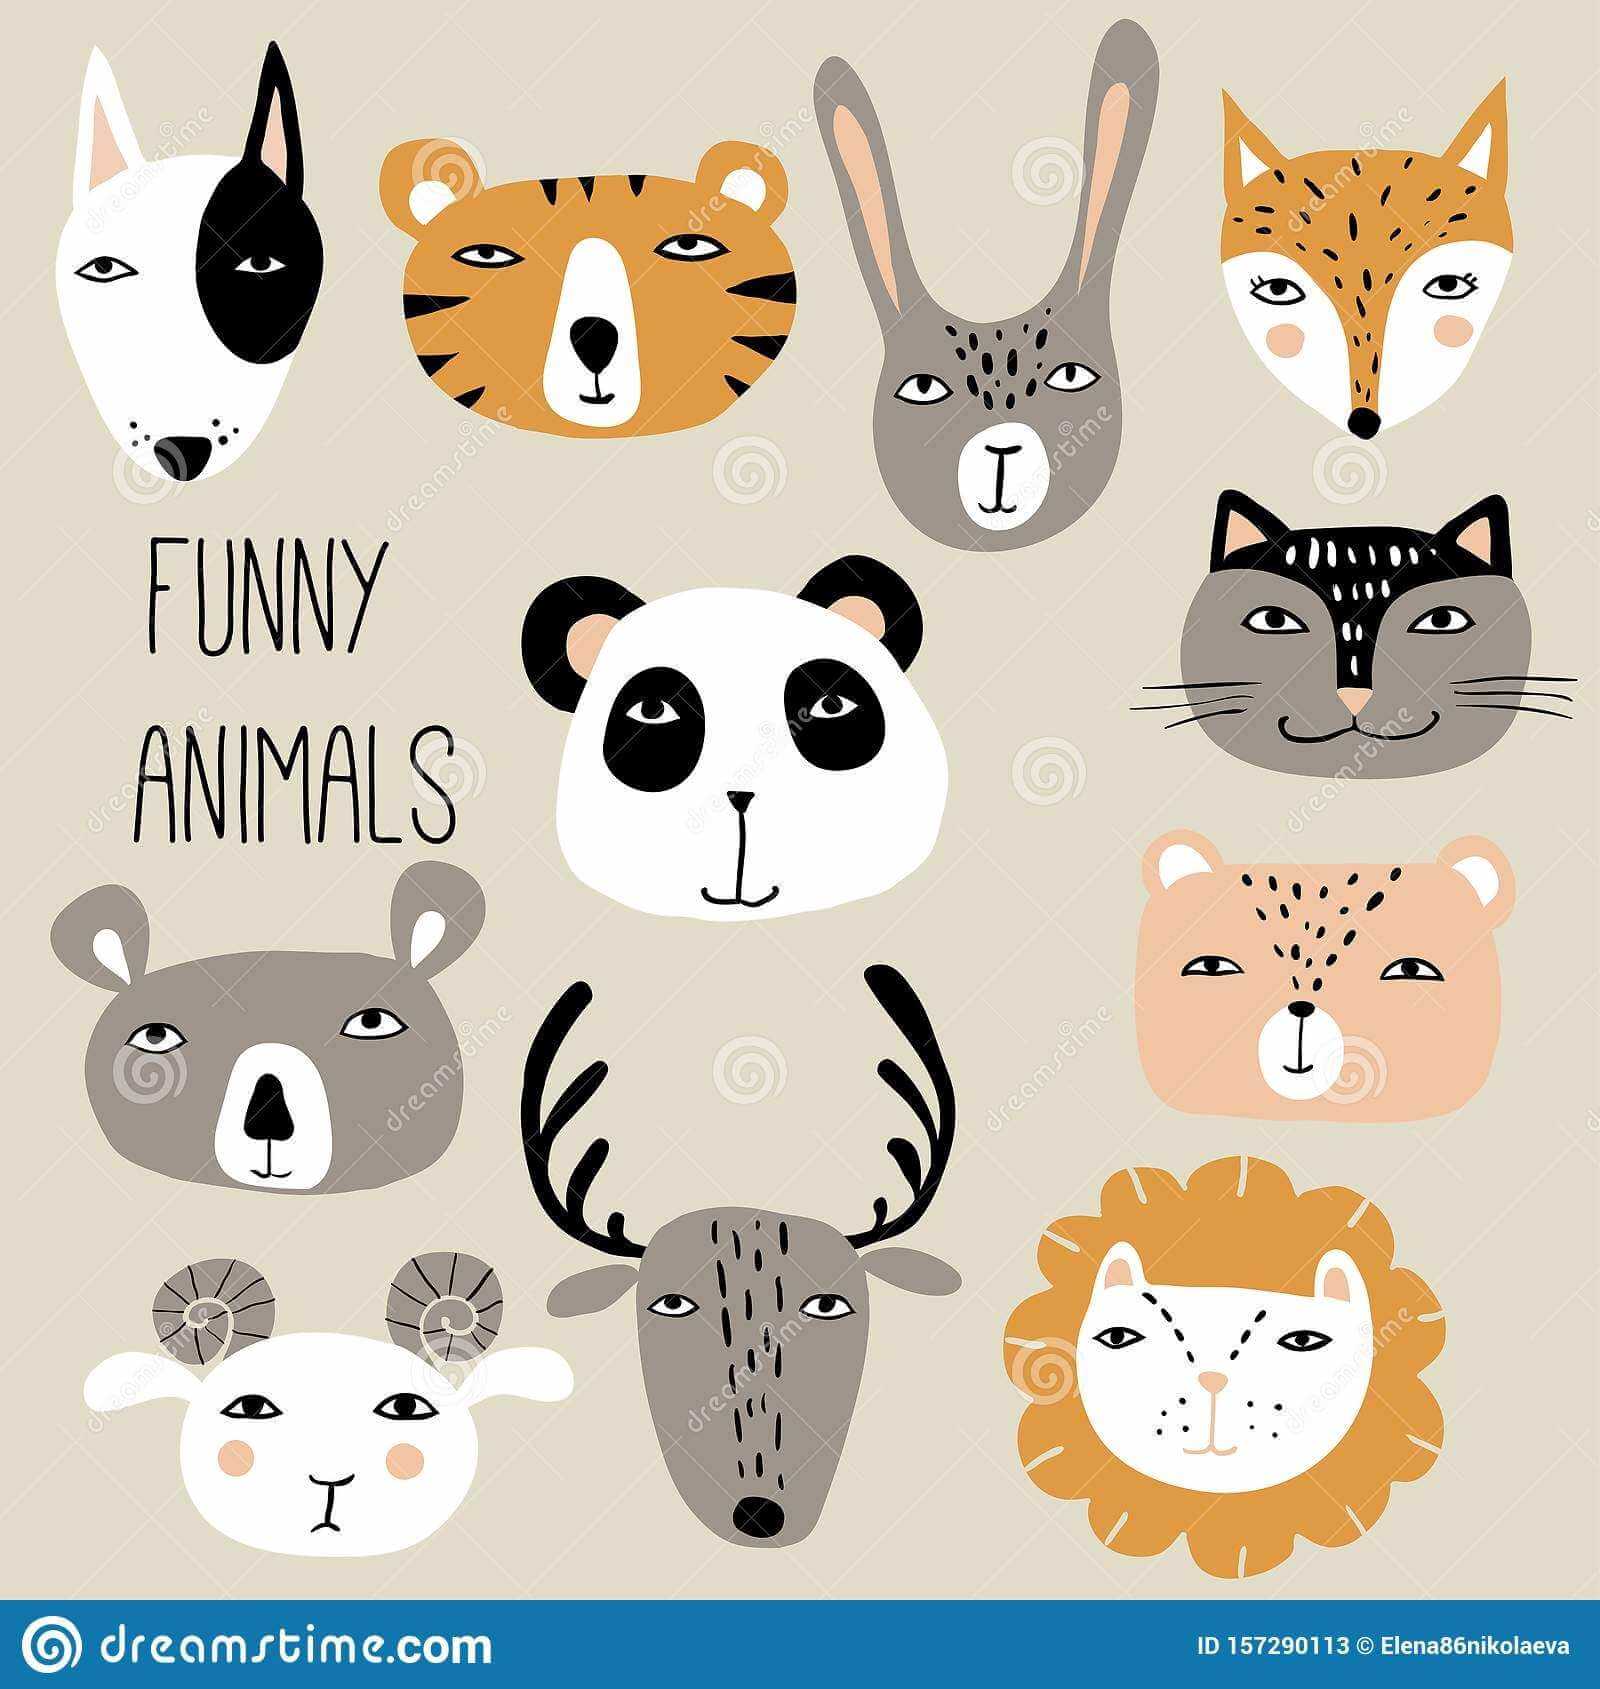 Картинки для детей с забавными животными 019